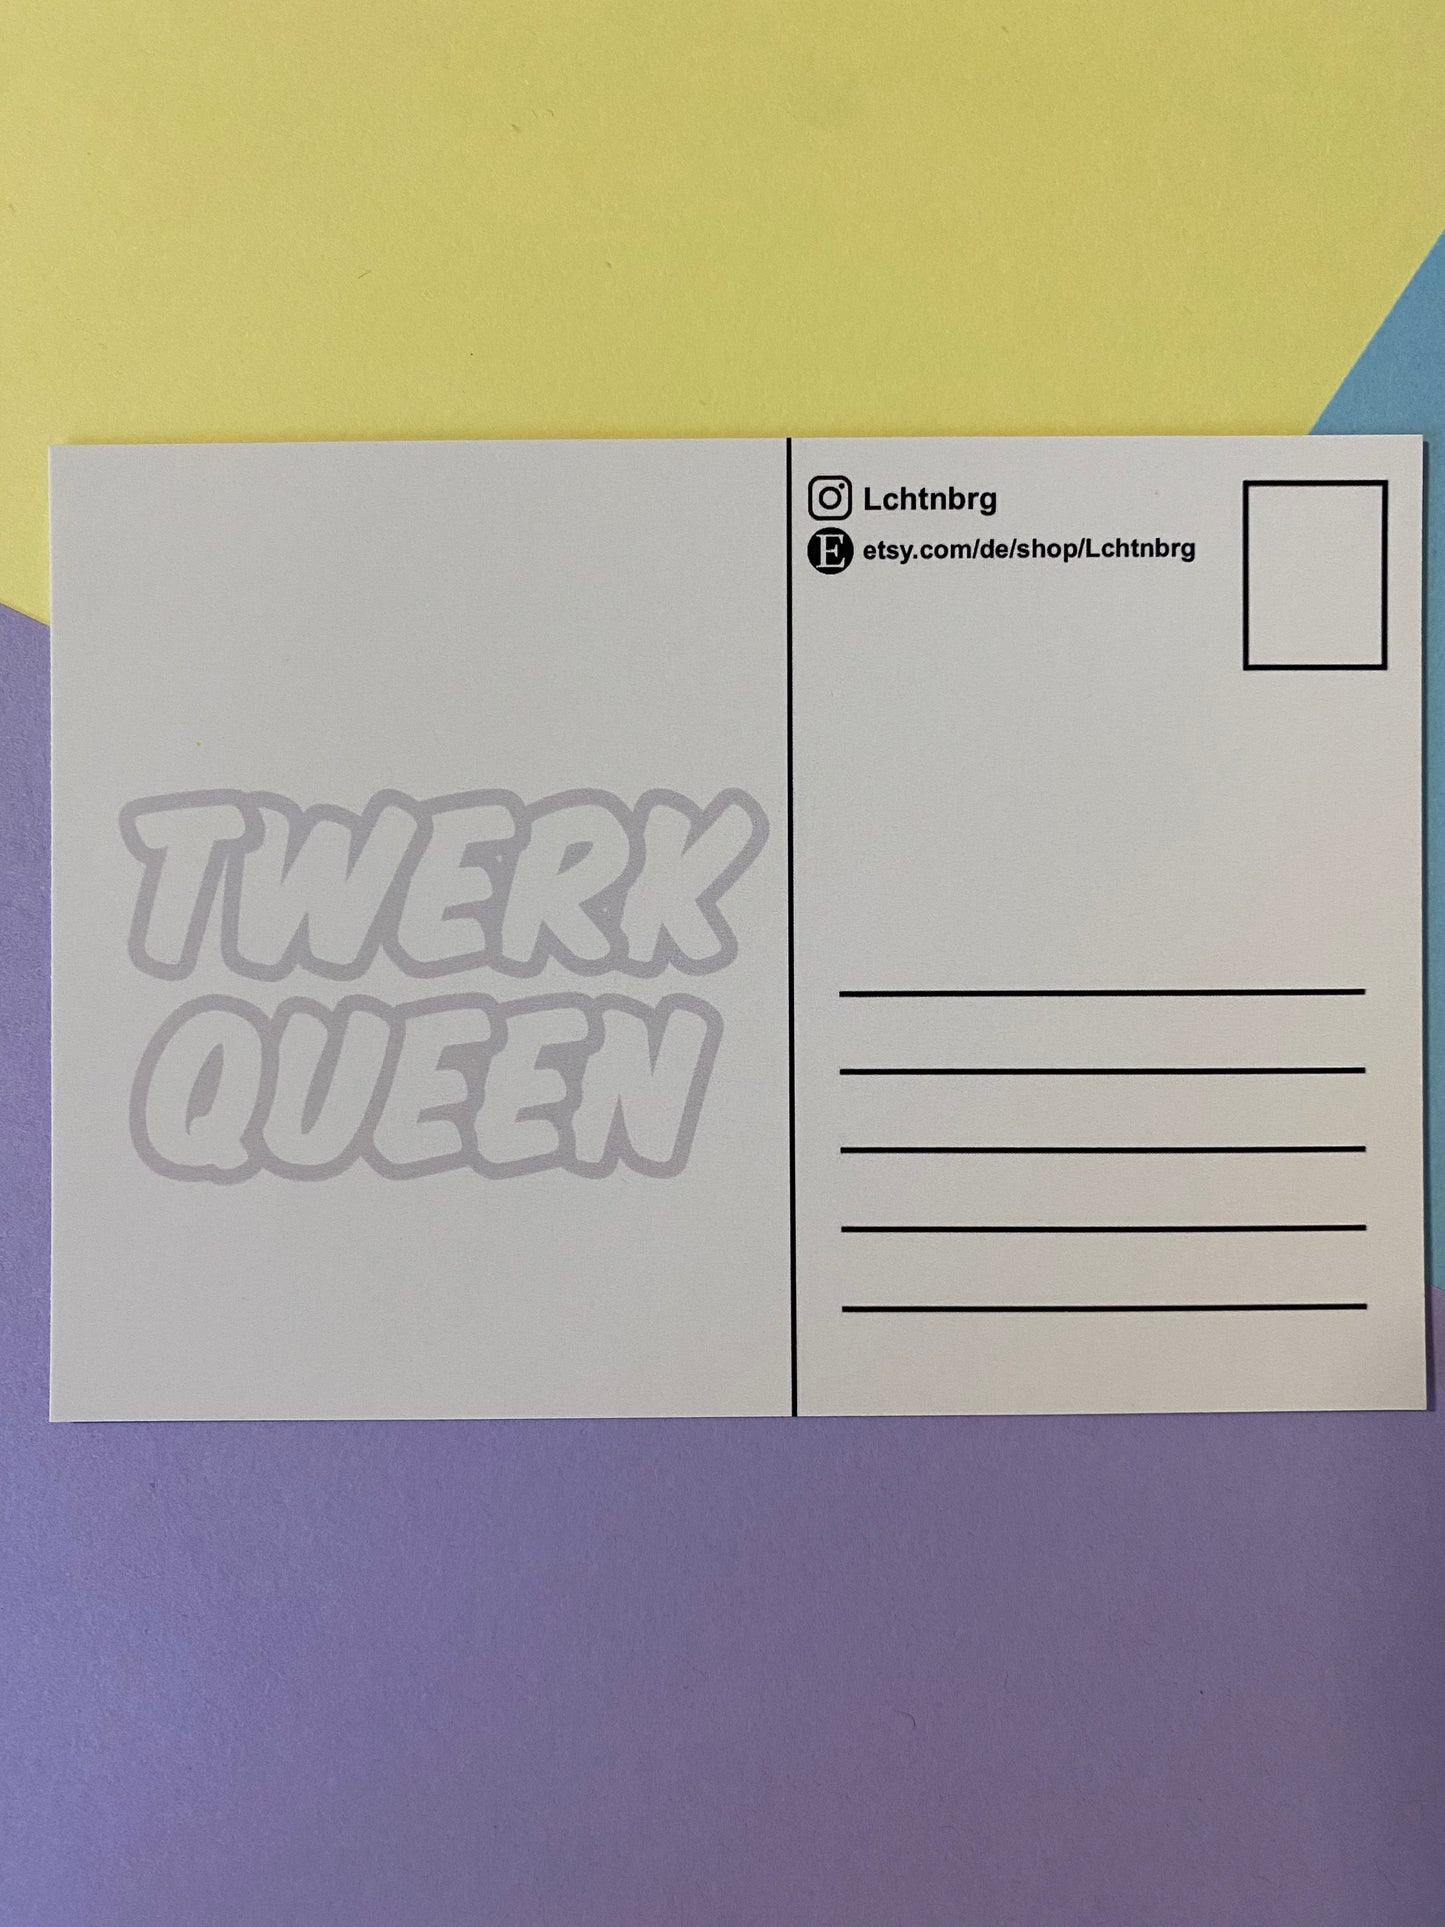 Postkarte „Twerk queen“